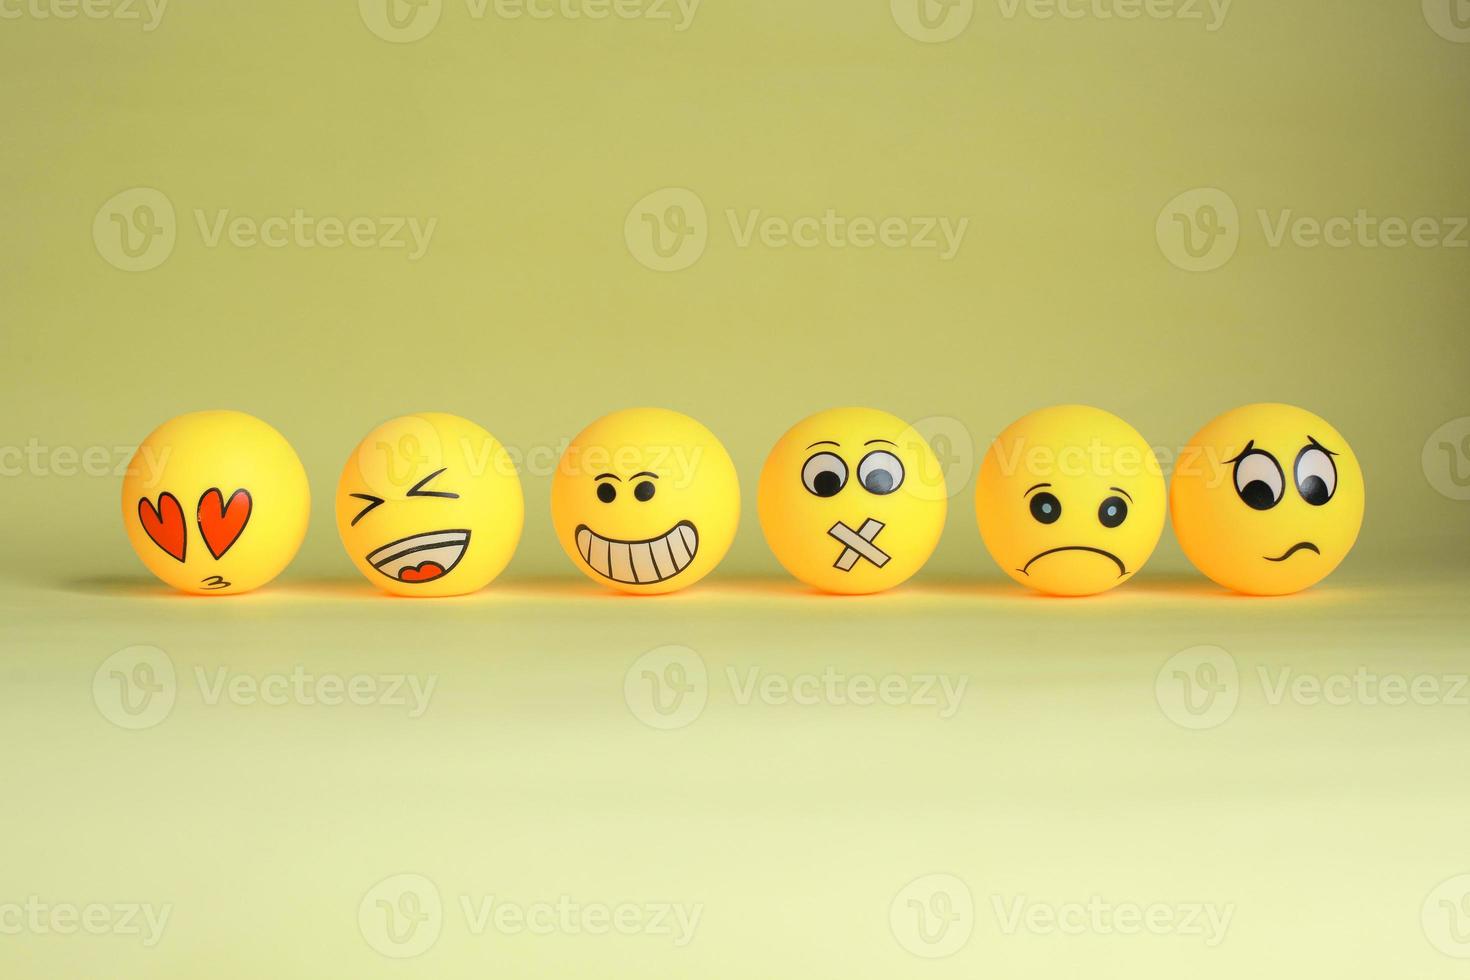 varie emoticon gialle isolate su sfondo giallo foto